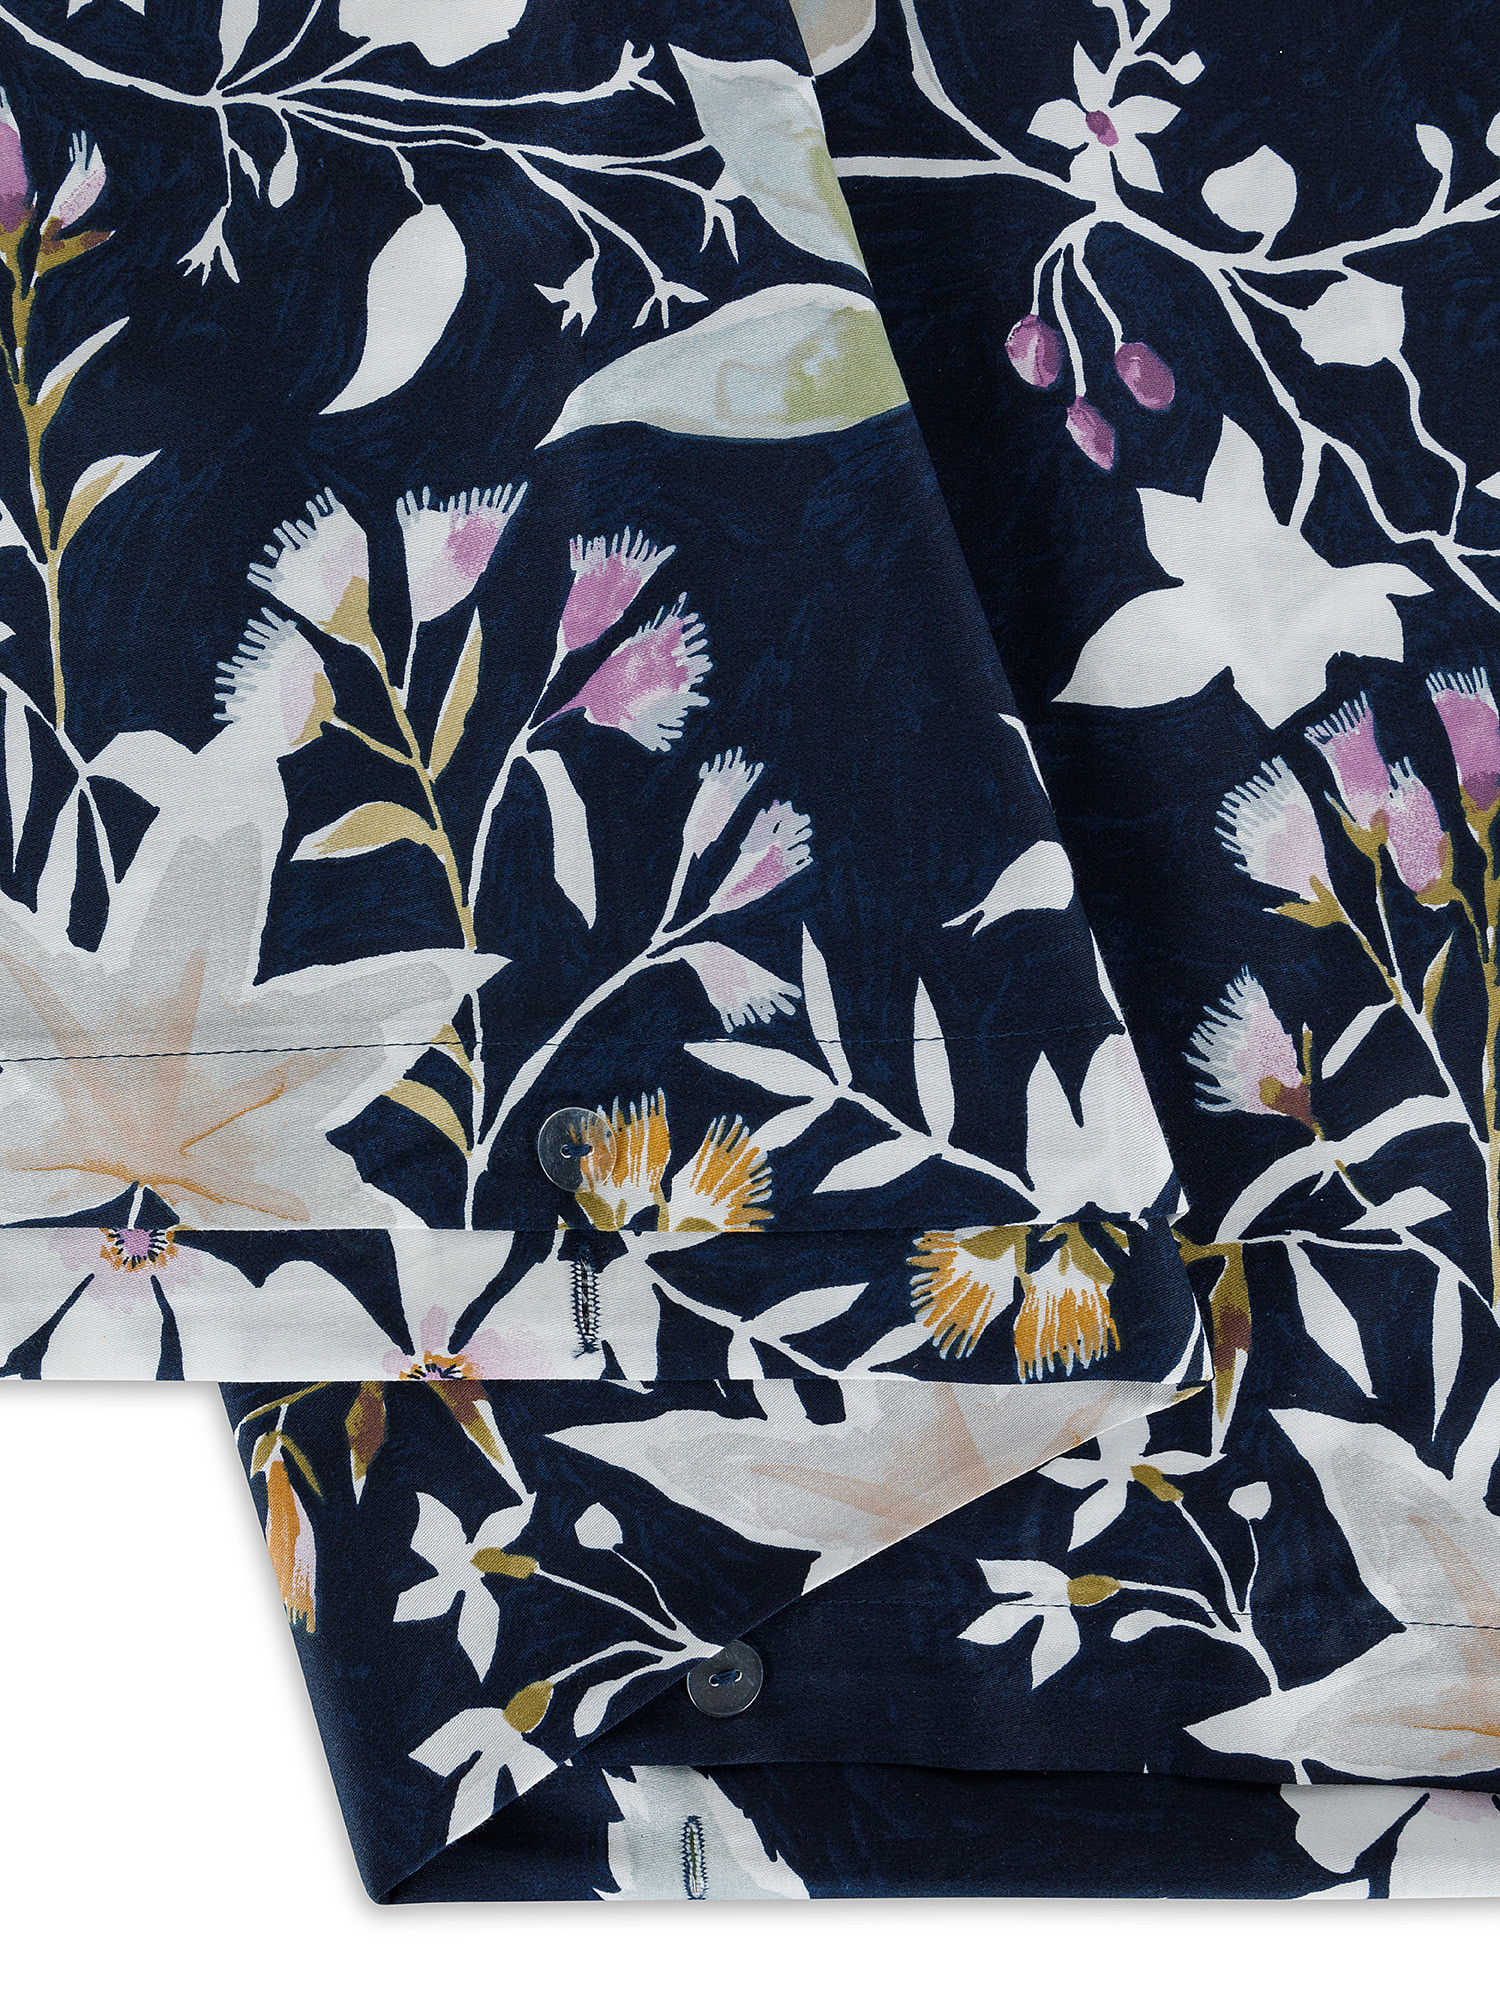 Floreal patterned cotton satin duvet cover set, Multicolor, large image number 1